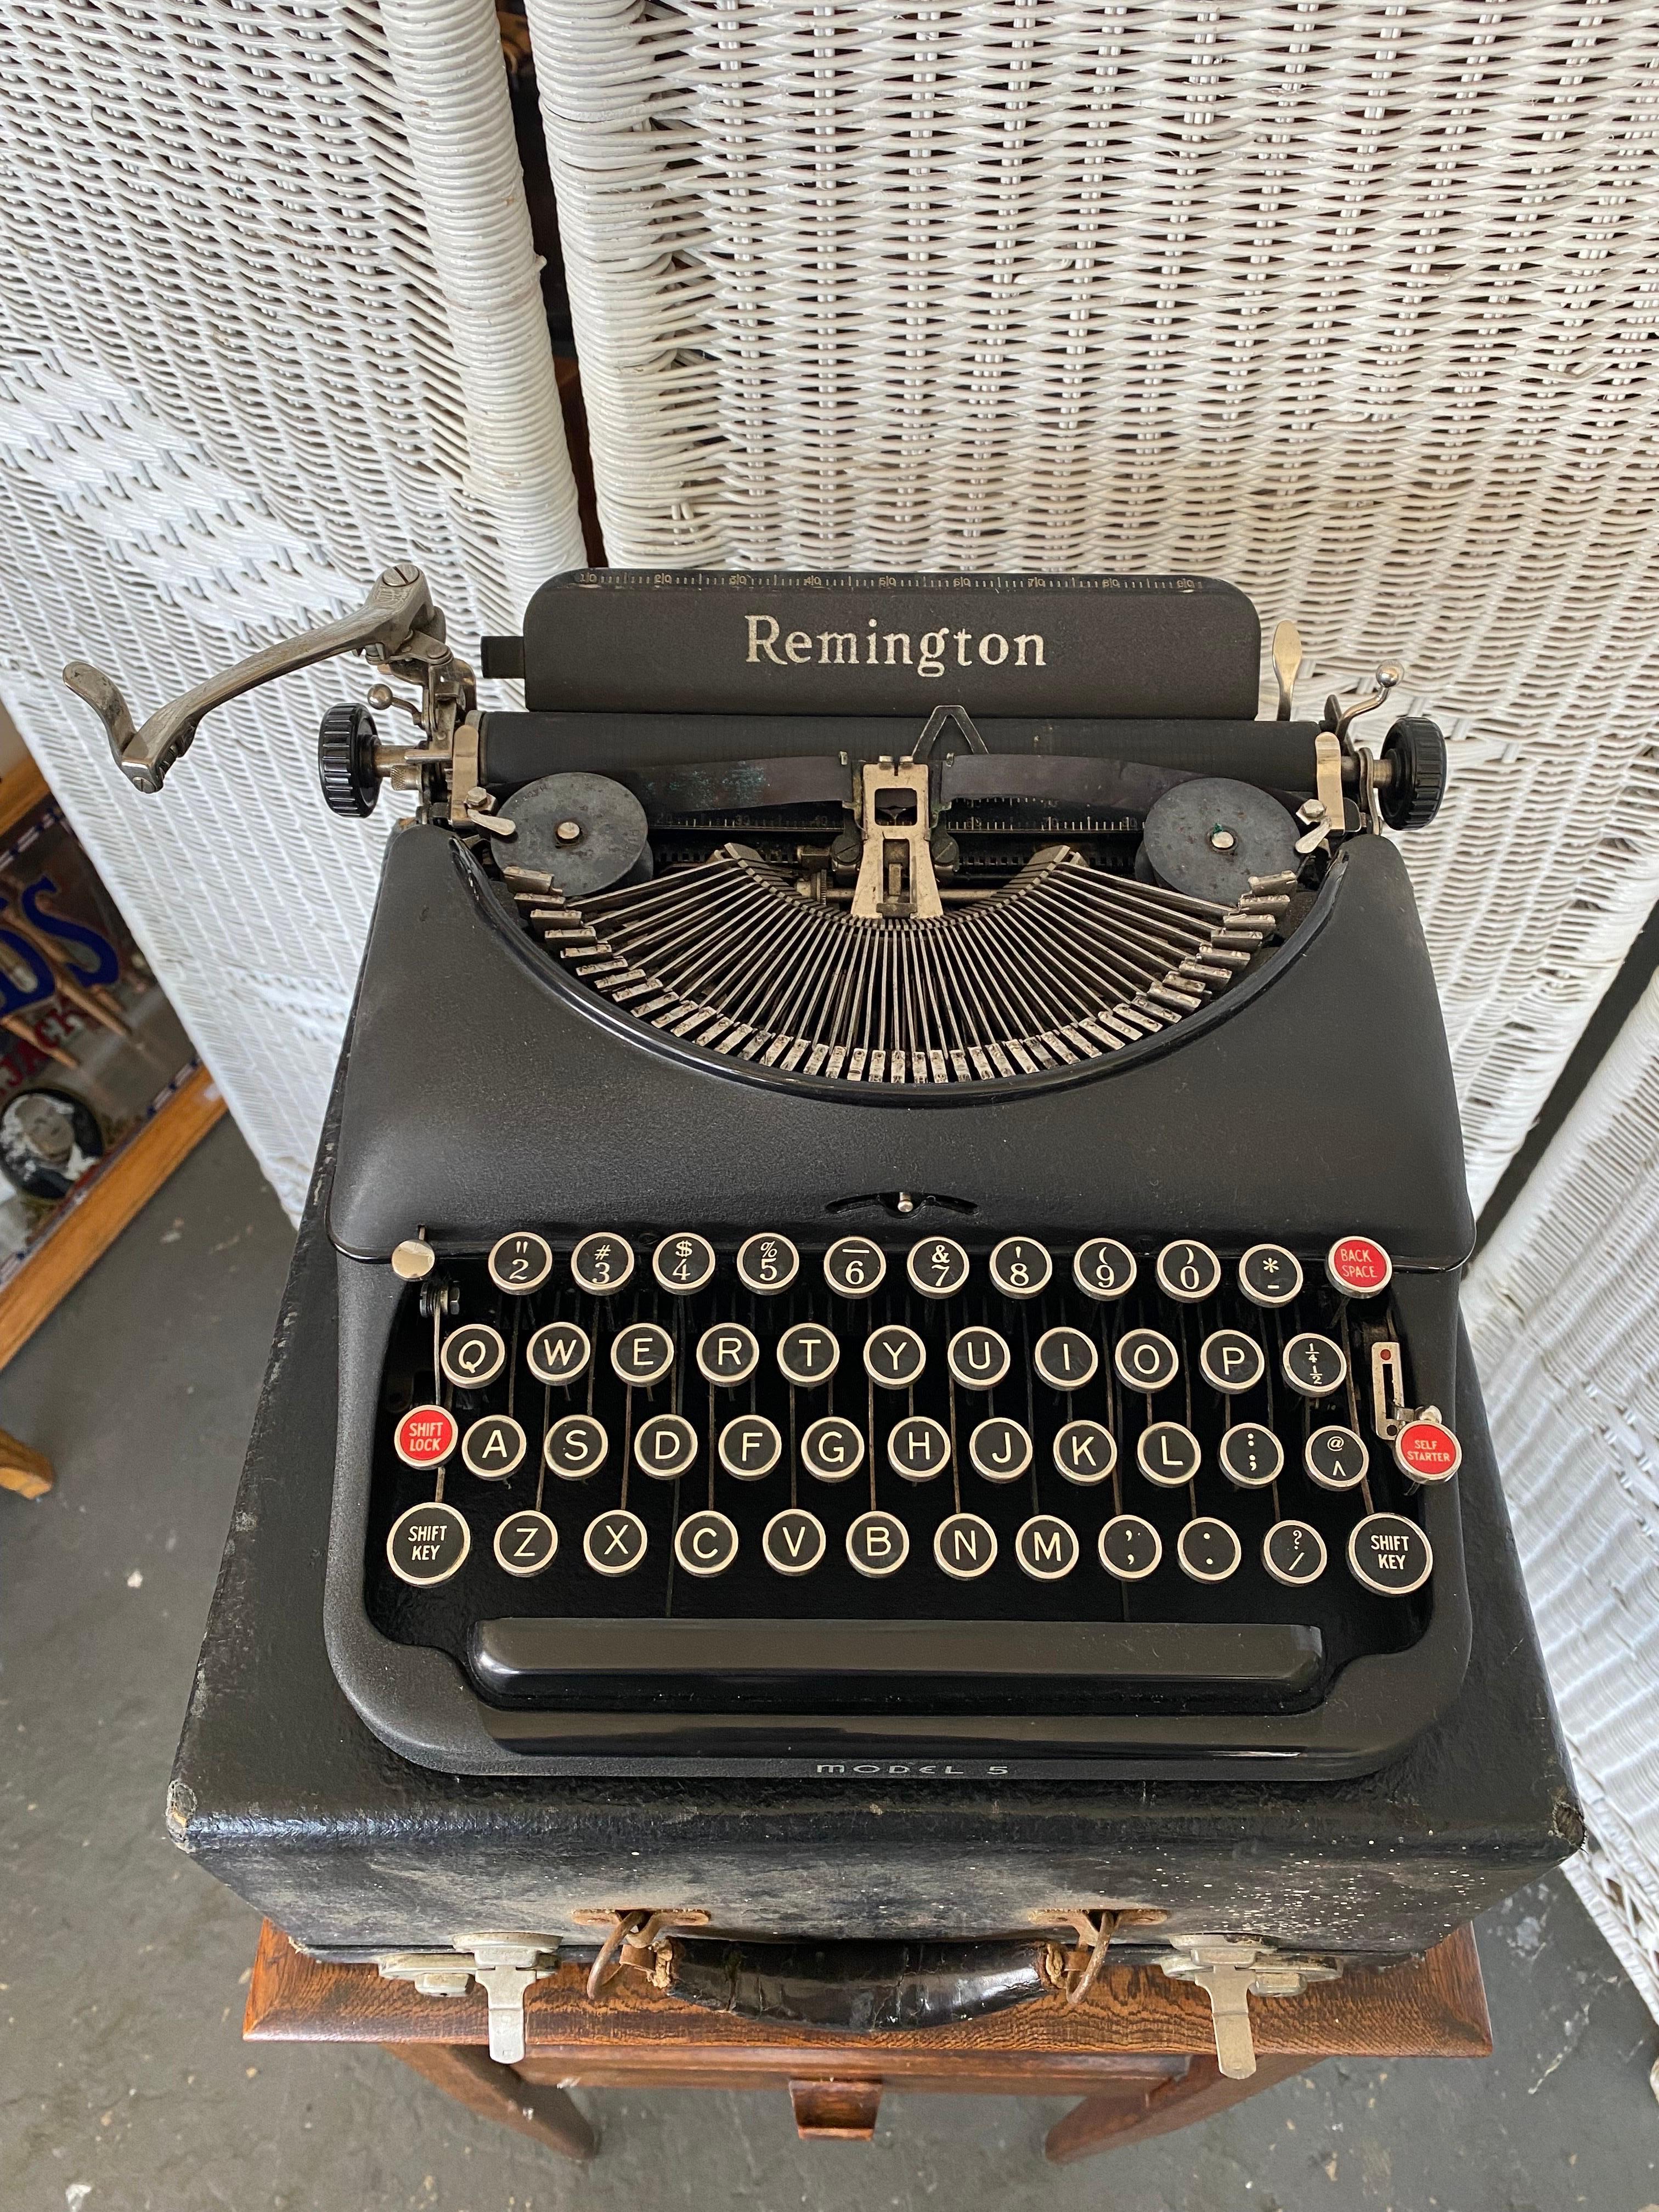 remington model 5 typewriter